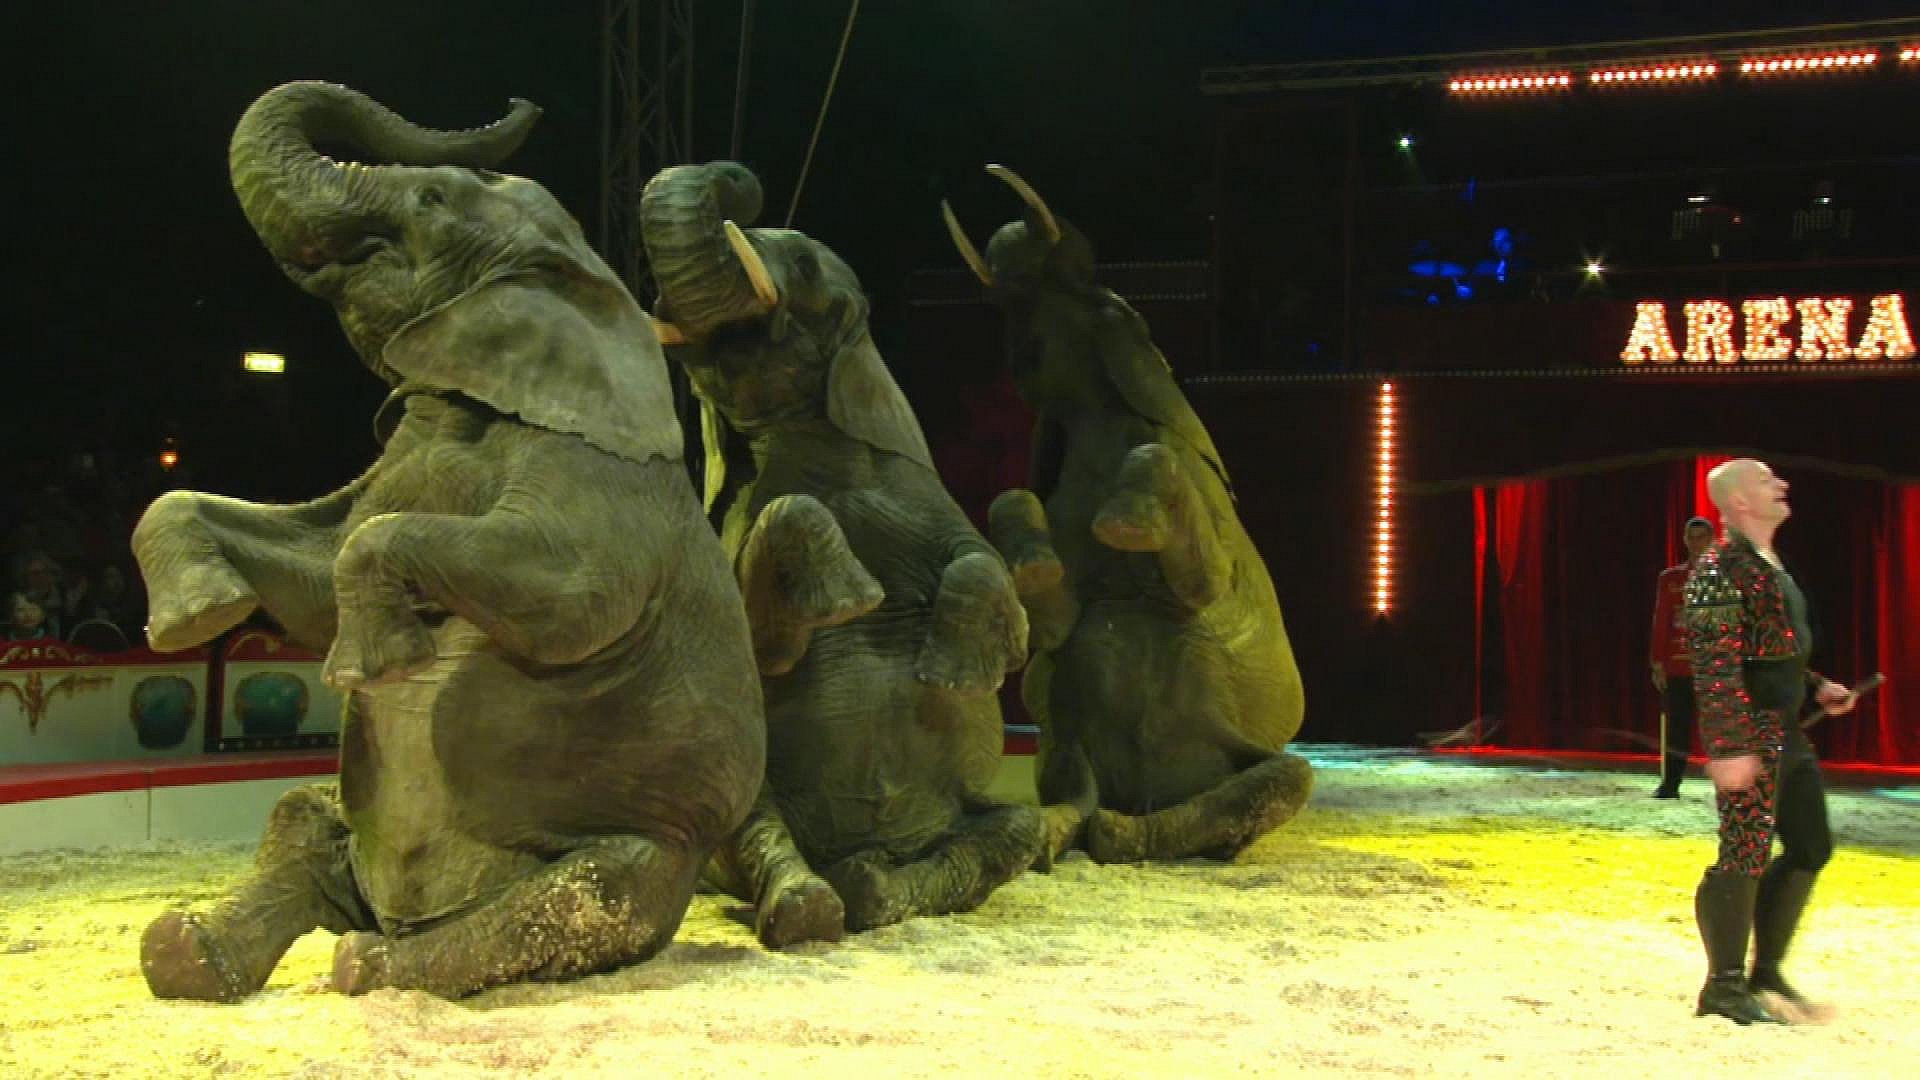 bang klasselærer Dynamics Solgte elefanter til staten - cirkus skylder 20 millioner i moms og skat |  TV2 ØST